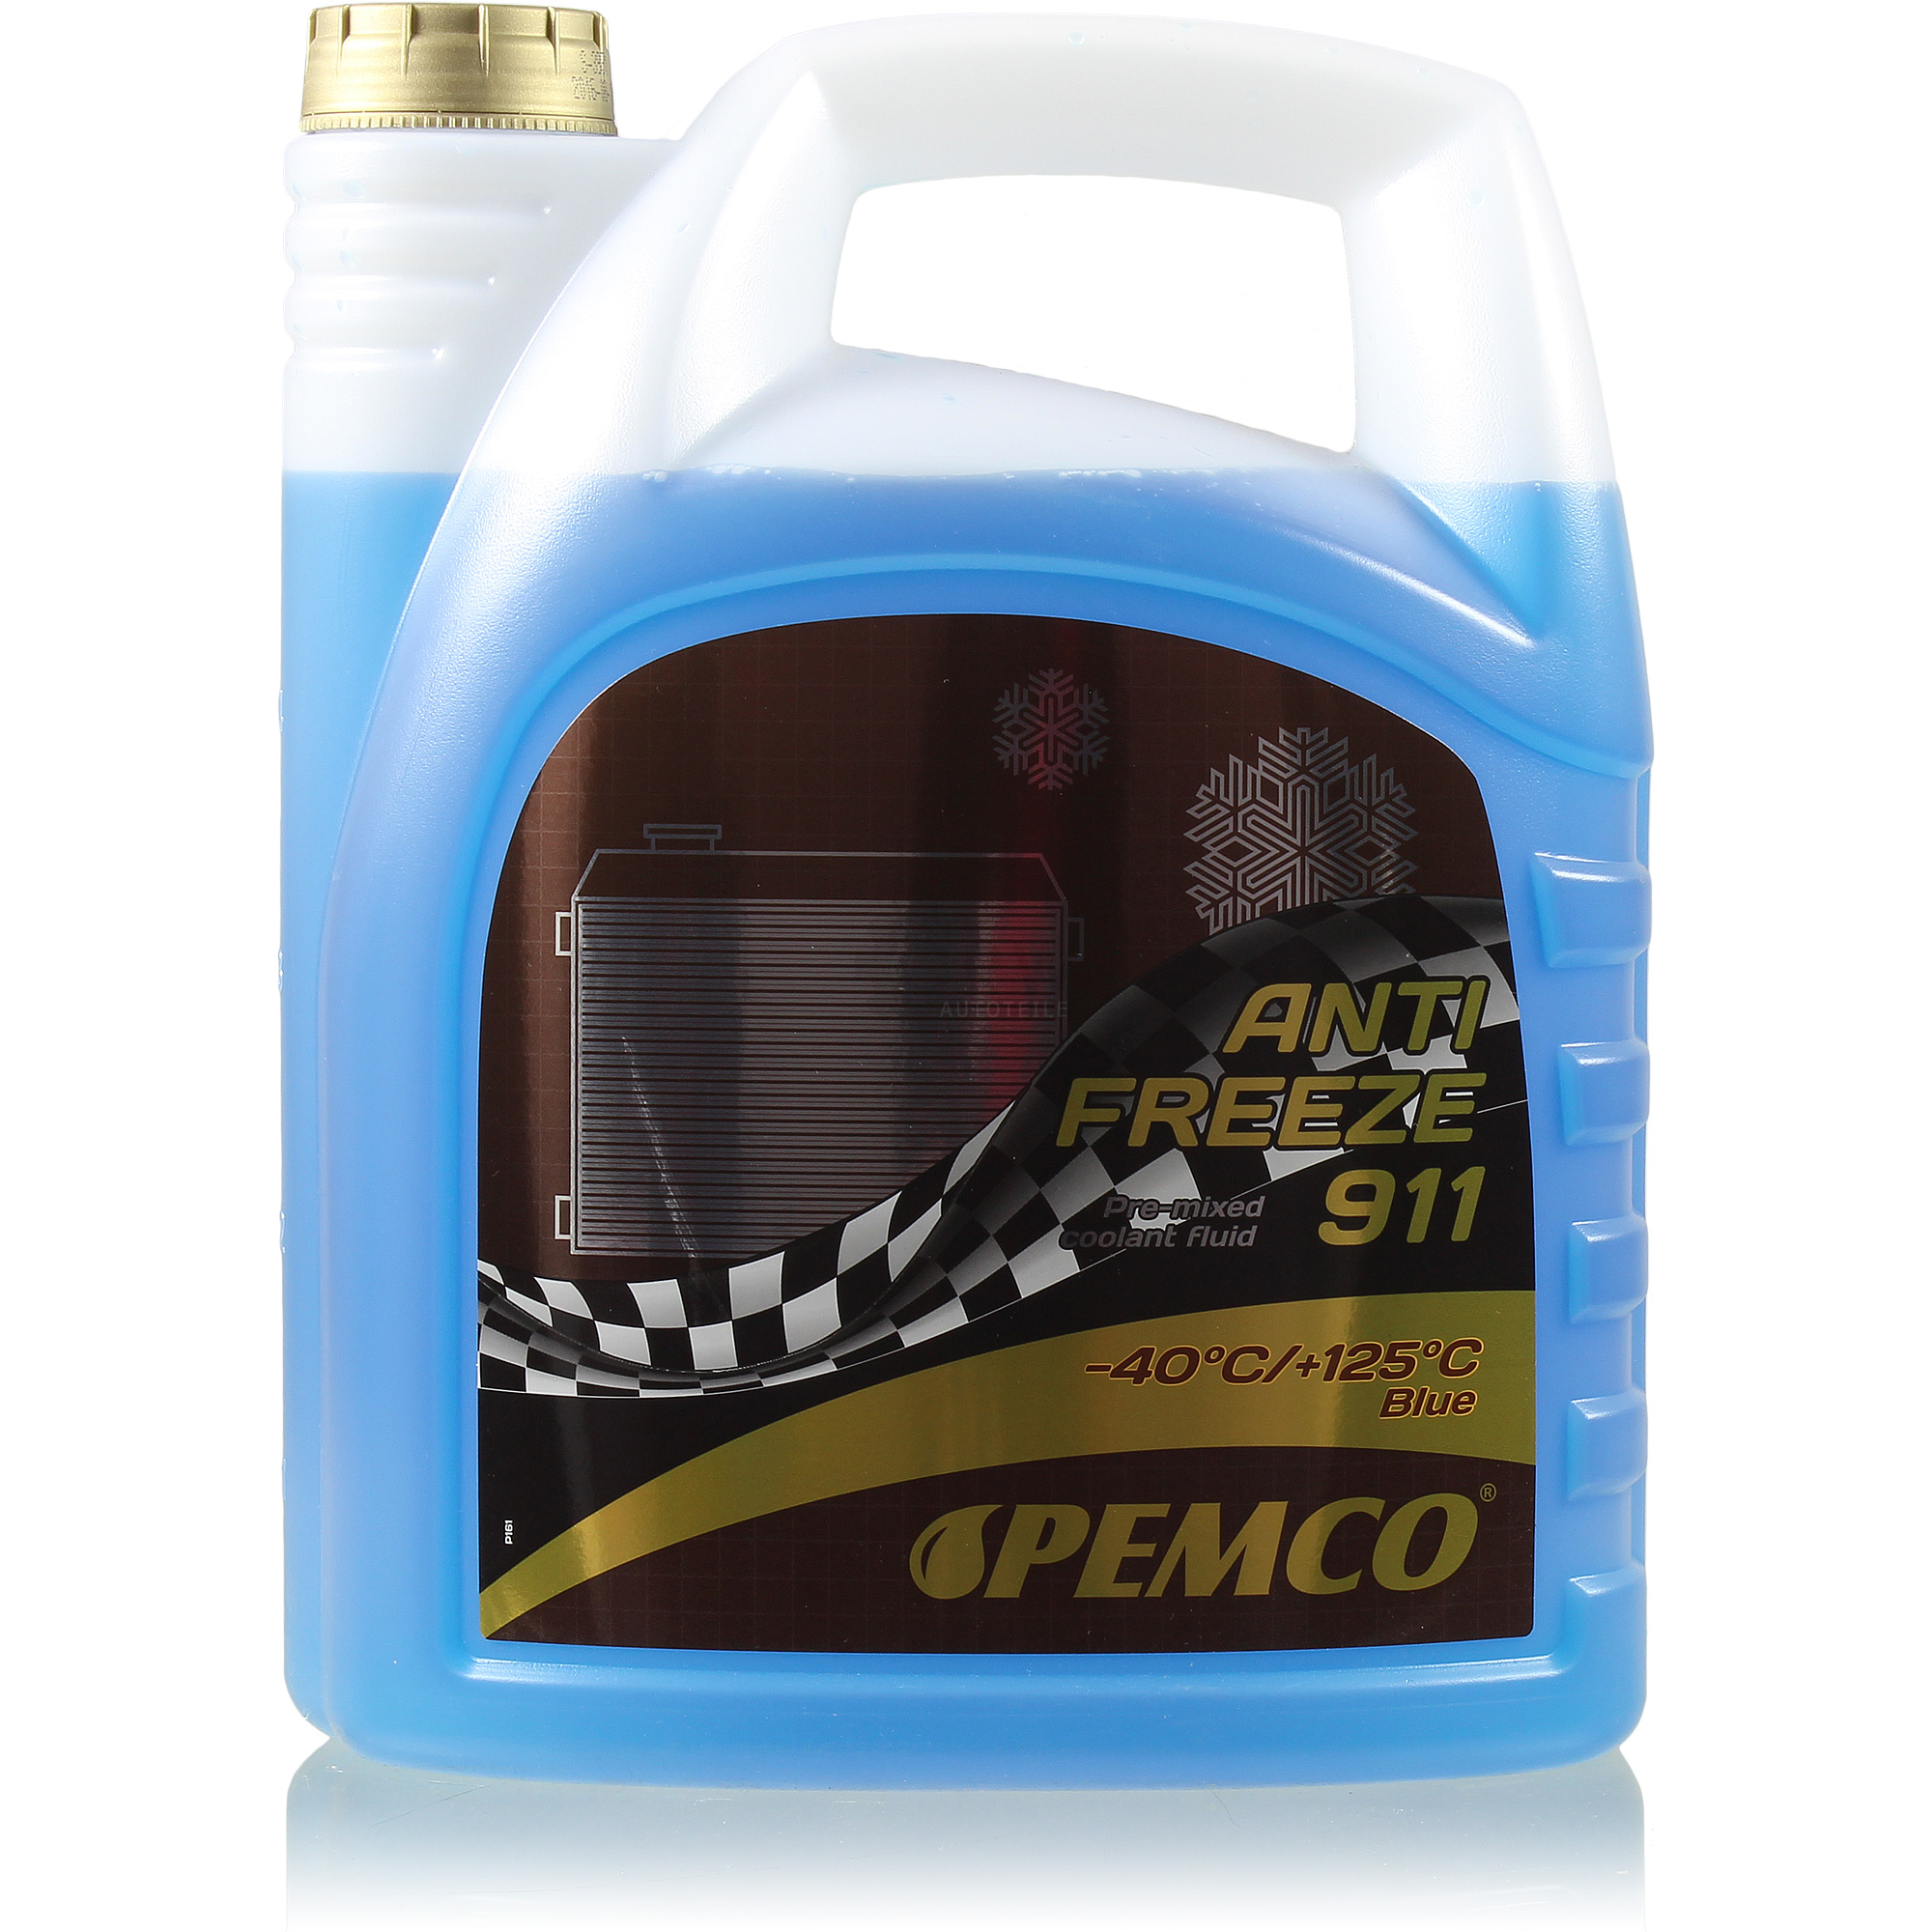 5 Liter PEMCO Antifreeze 911 Kühlerfrostschutz blau Fertiggemisch Typ G11